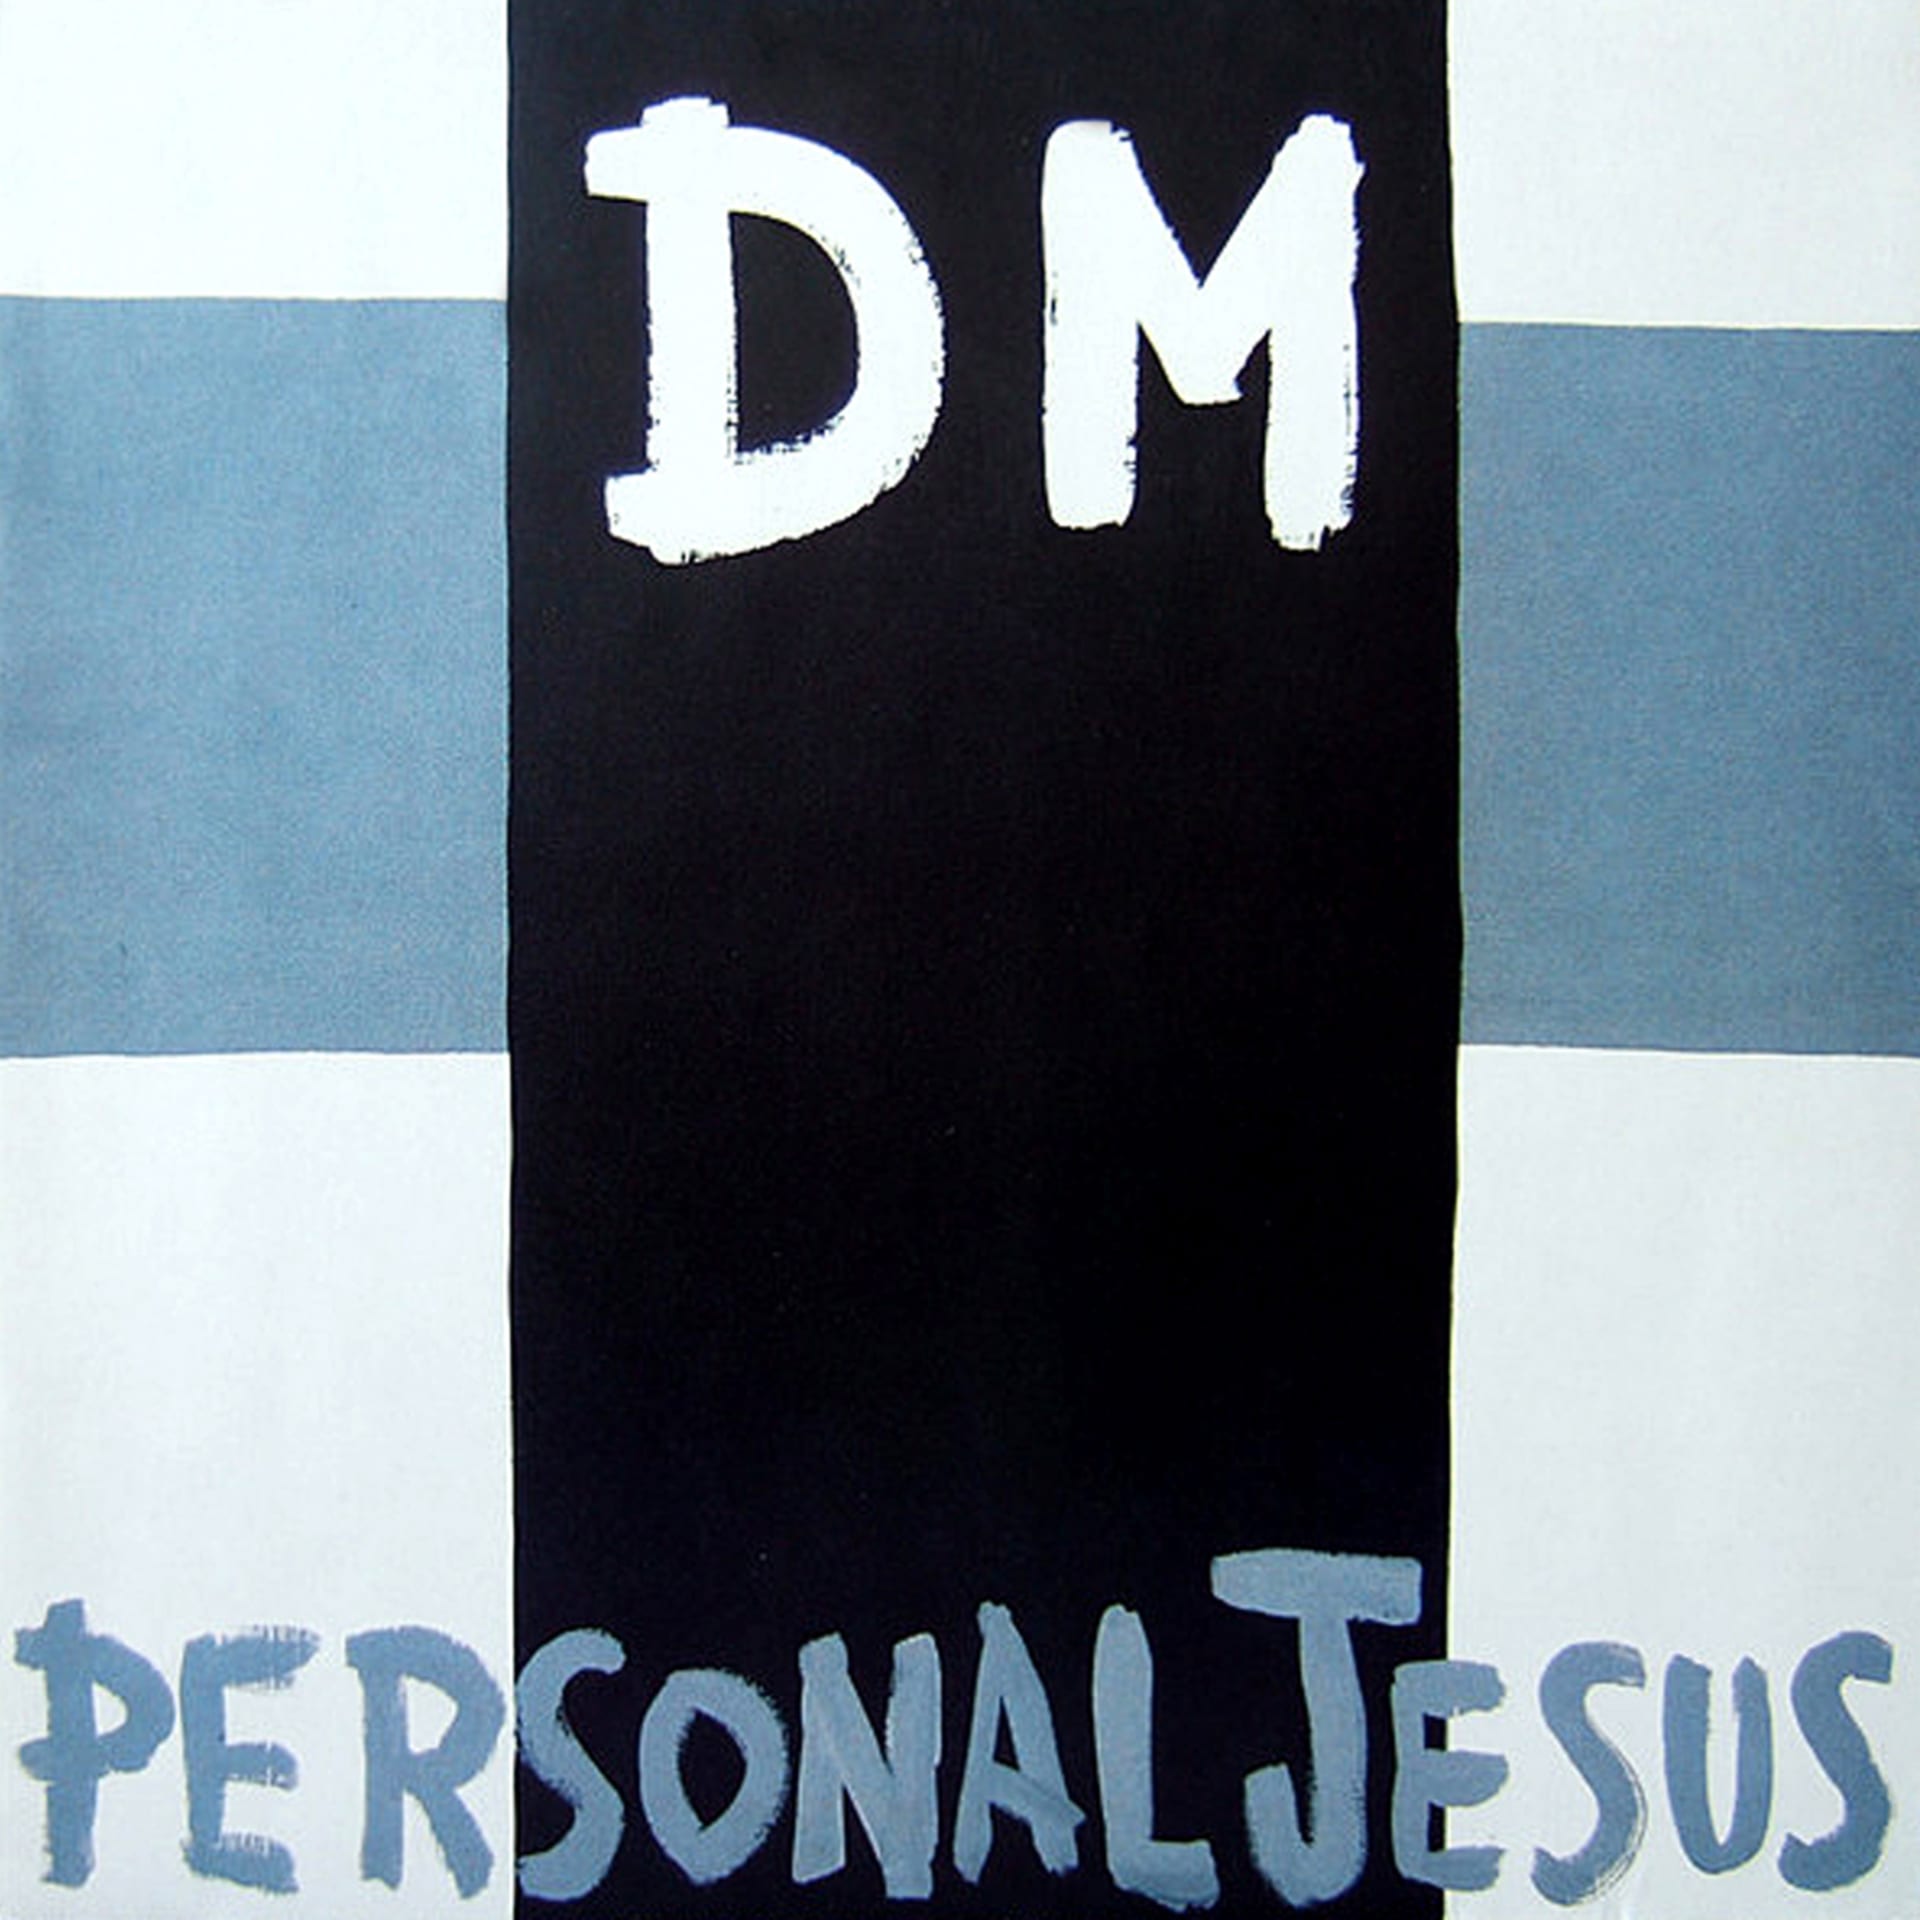 Vše odstartovala veleúspěšná skladba Personal Jesus s dominancí kytary, nezvyklou na poměry Depeche Mode.